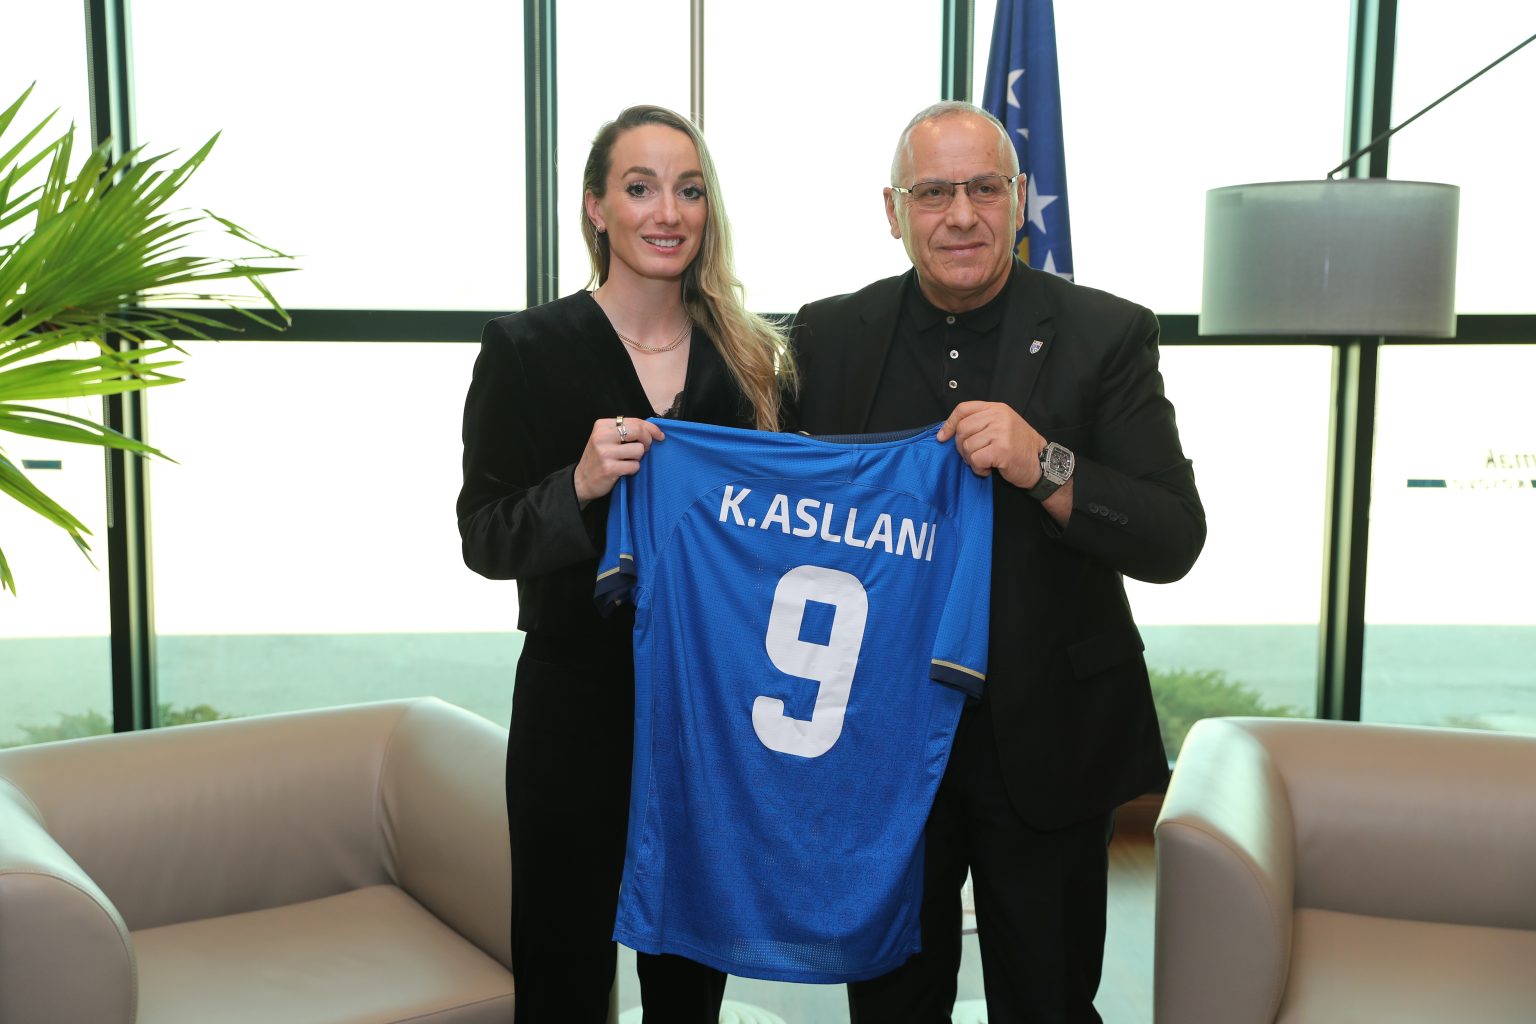 Presidenti Ademi priti futbollisten e famshme Kosovare Asllani 